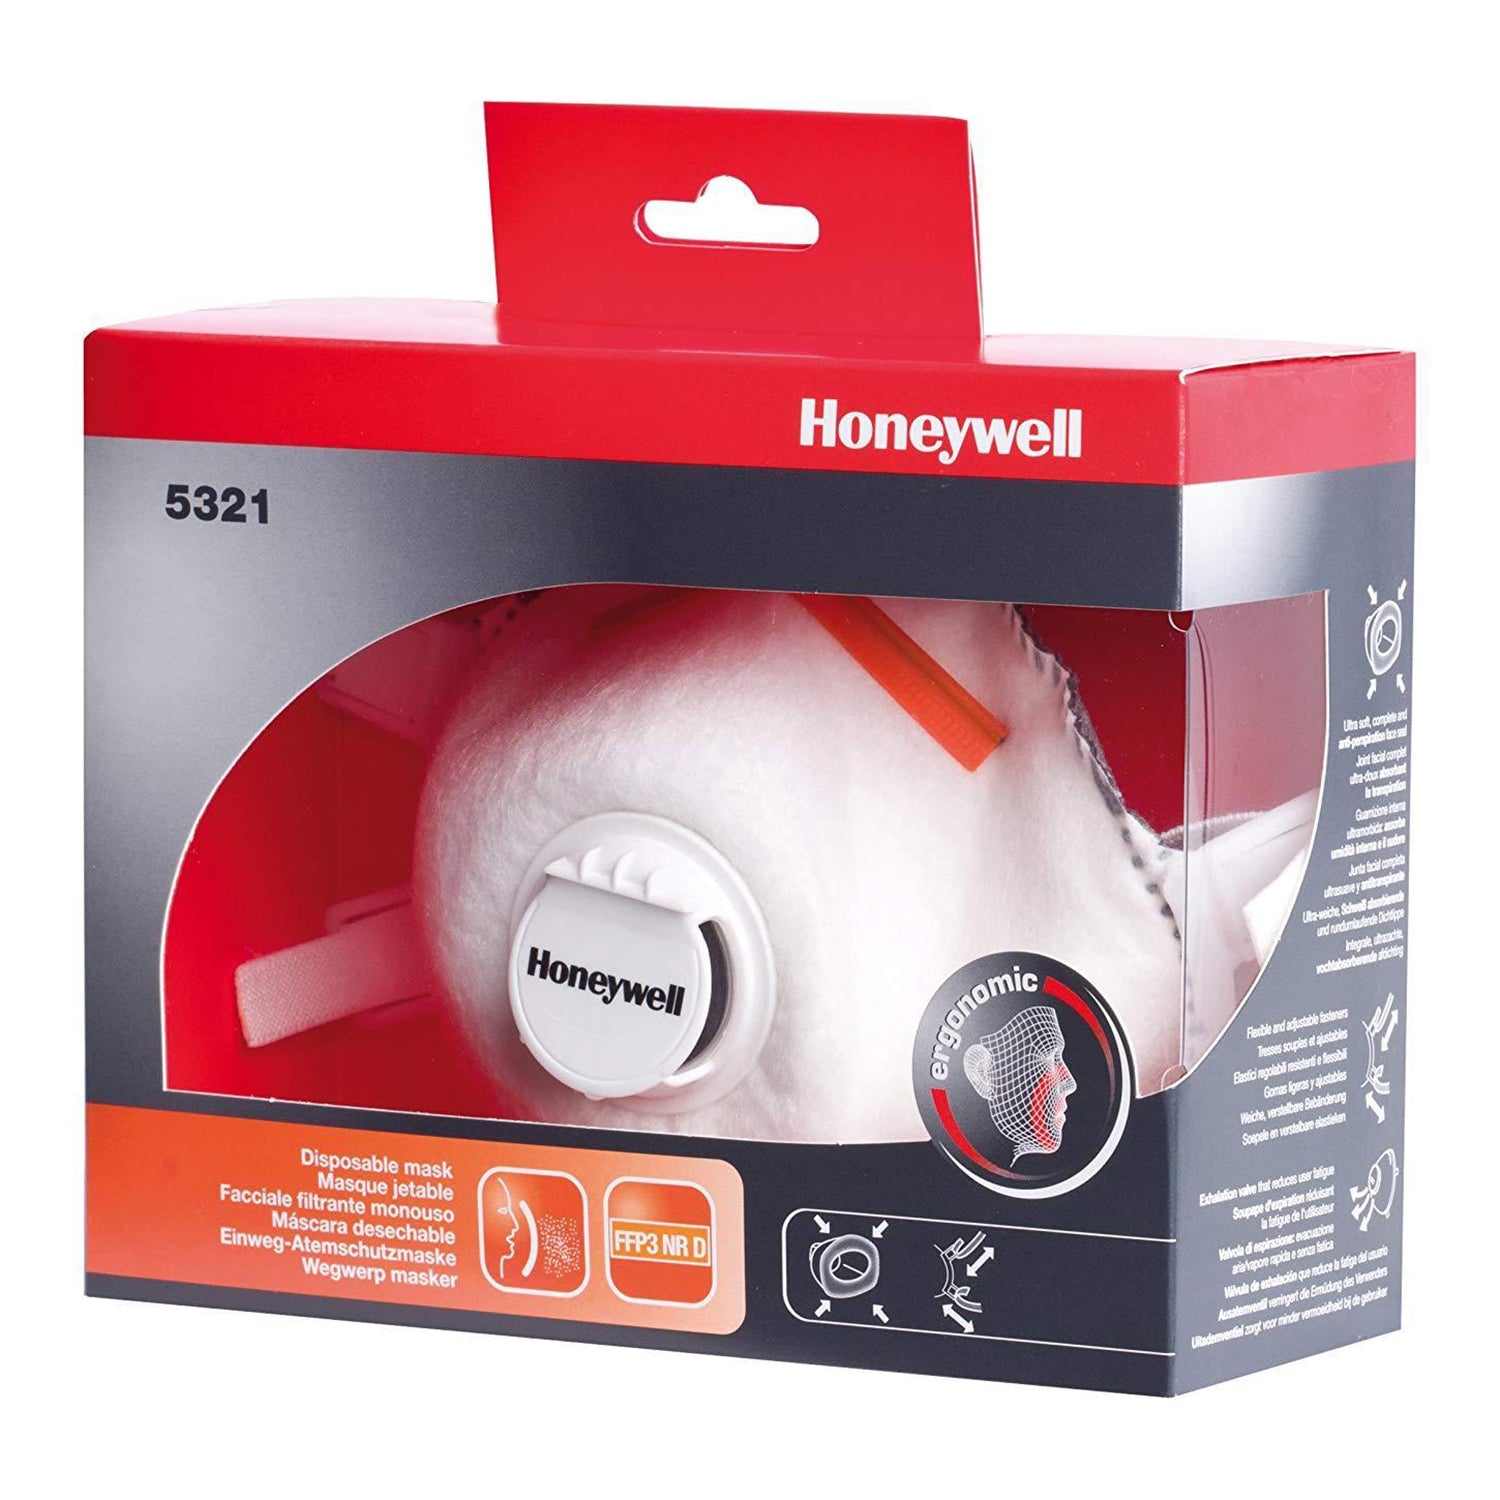  FFP3 M/L NR D V Respirator Mask Honeywell 5321 -Pack of 1